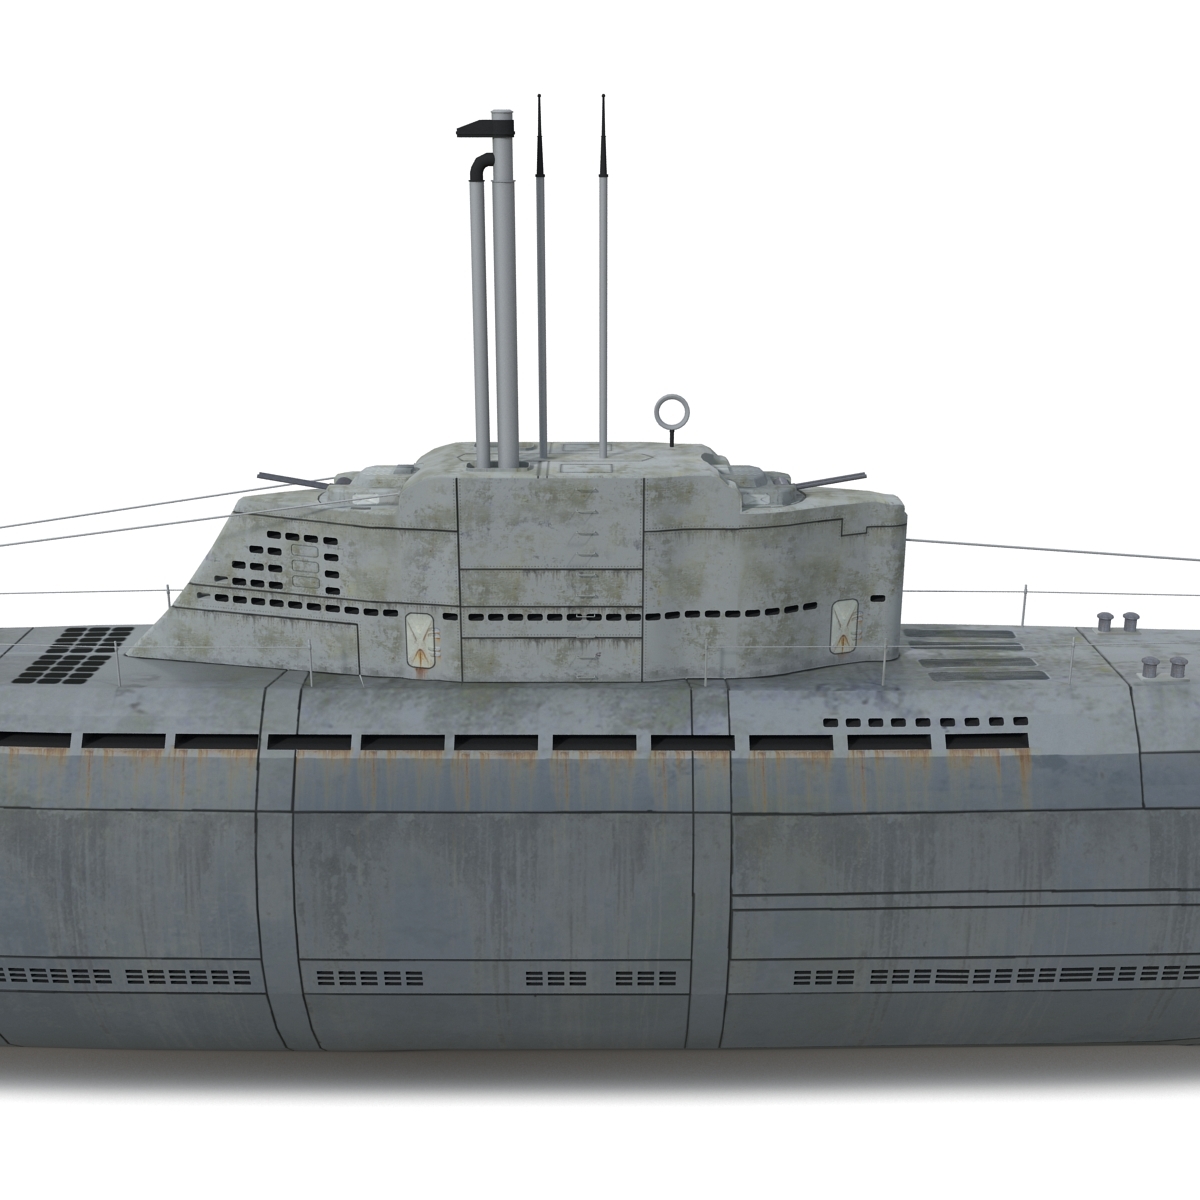 U-2540号潜艇图片